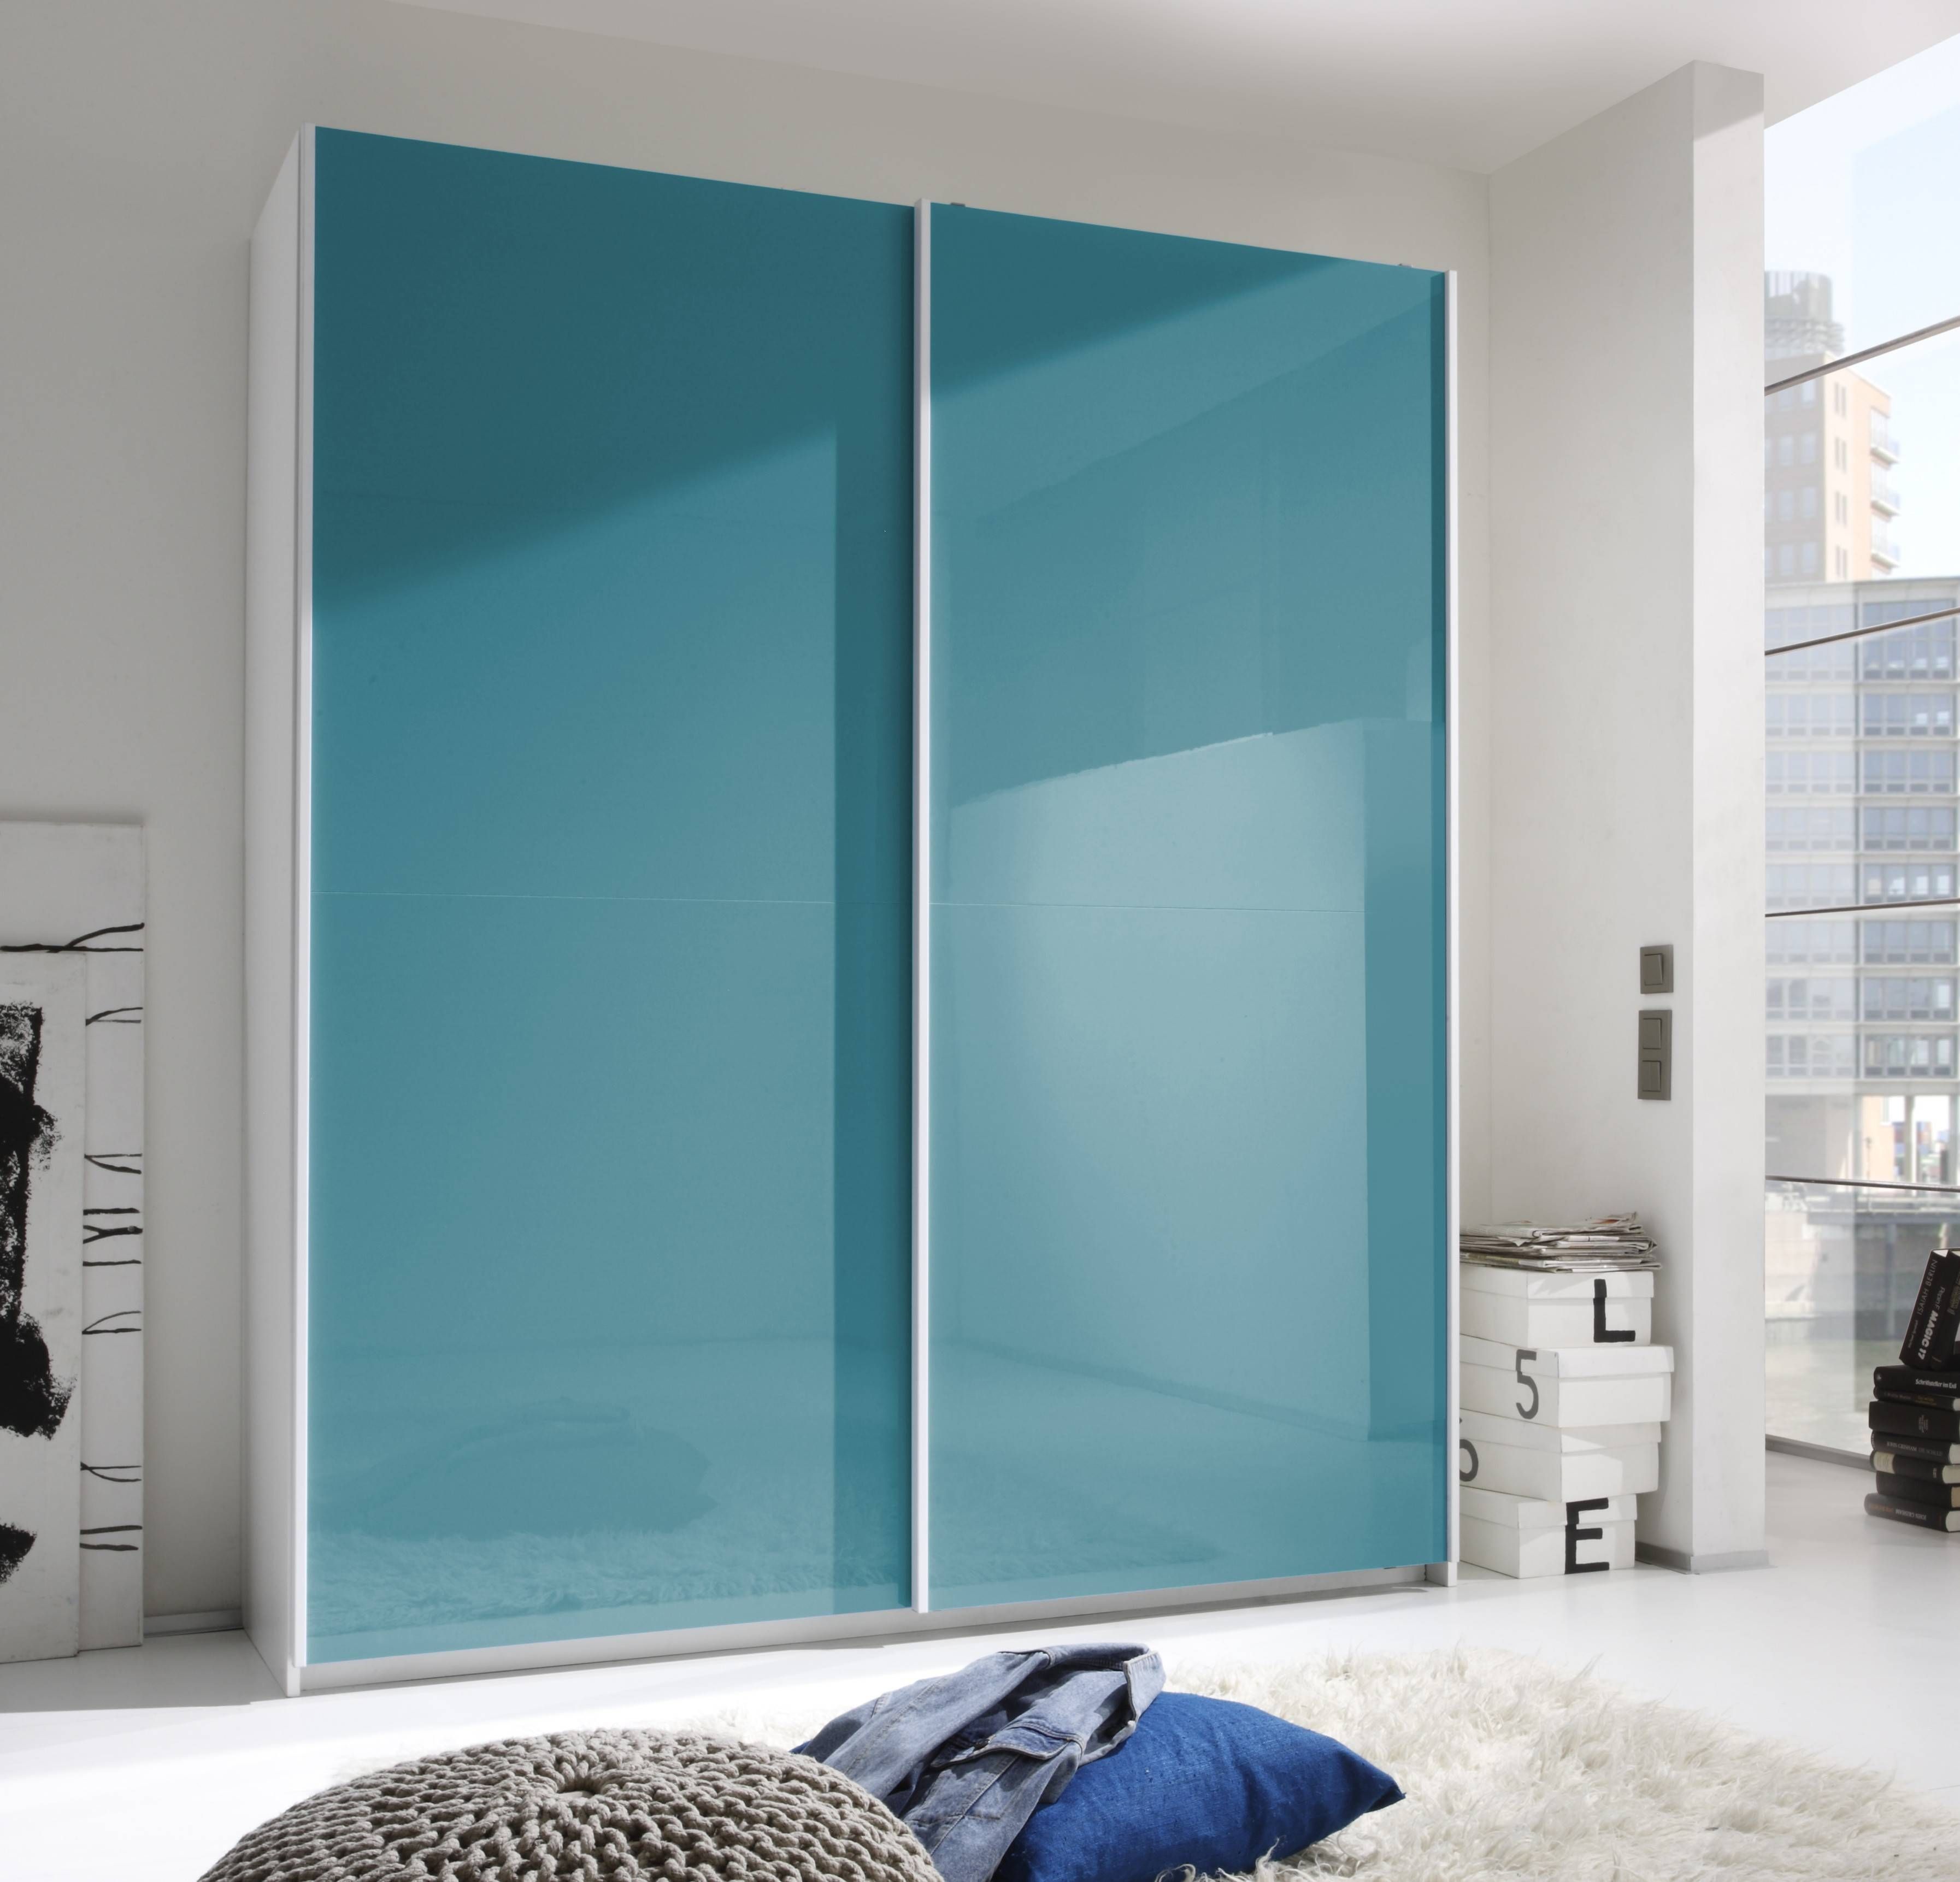 Smart Wardrobe W/2 Sliding Doors, Turquoise Buy Online At Best Inside 2 Sliding Door Wardrobes (View 7 of 15)